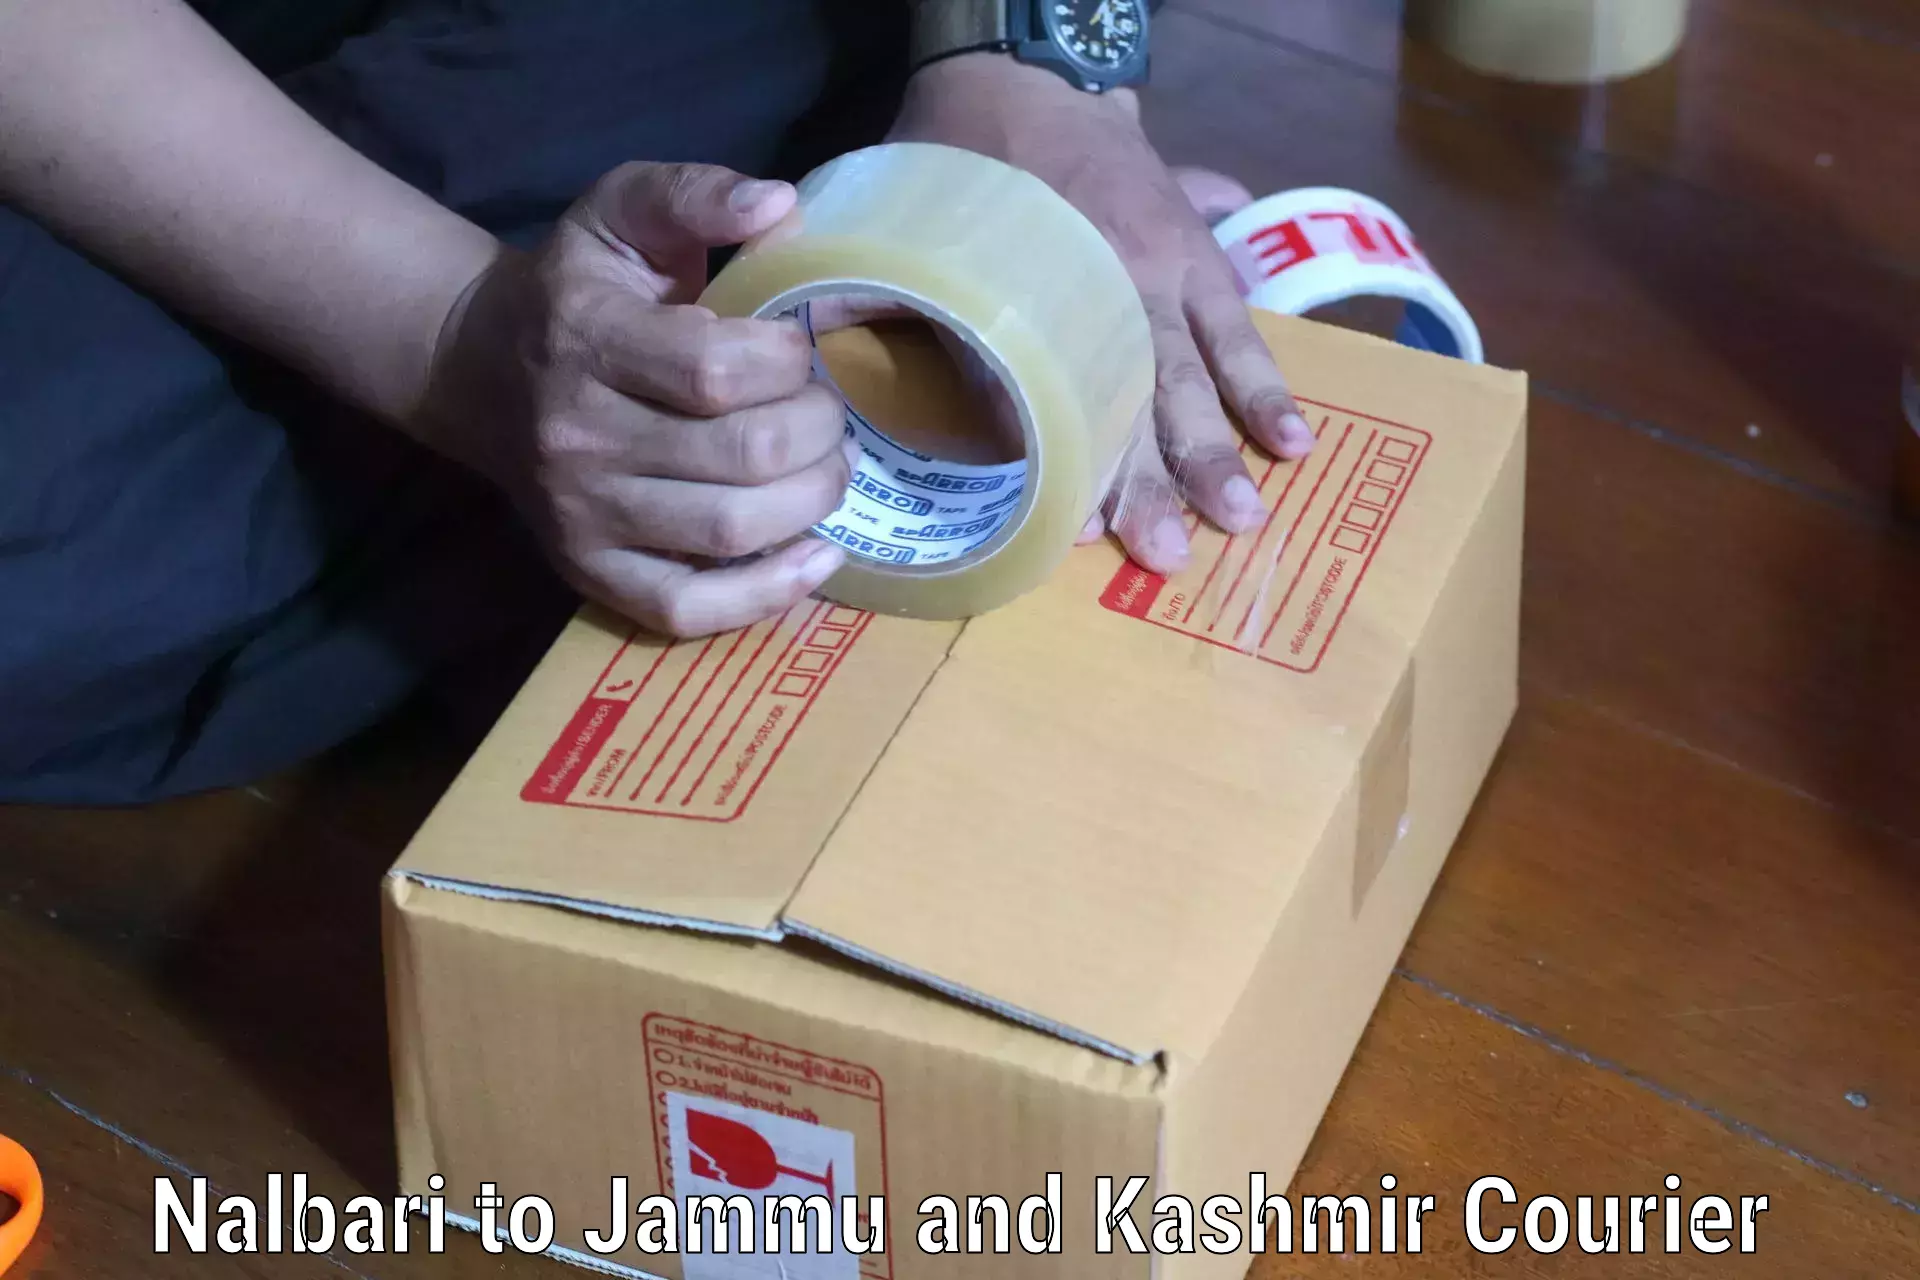 Bulk shipping discounts Nalbari to Srinagar Kashmir